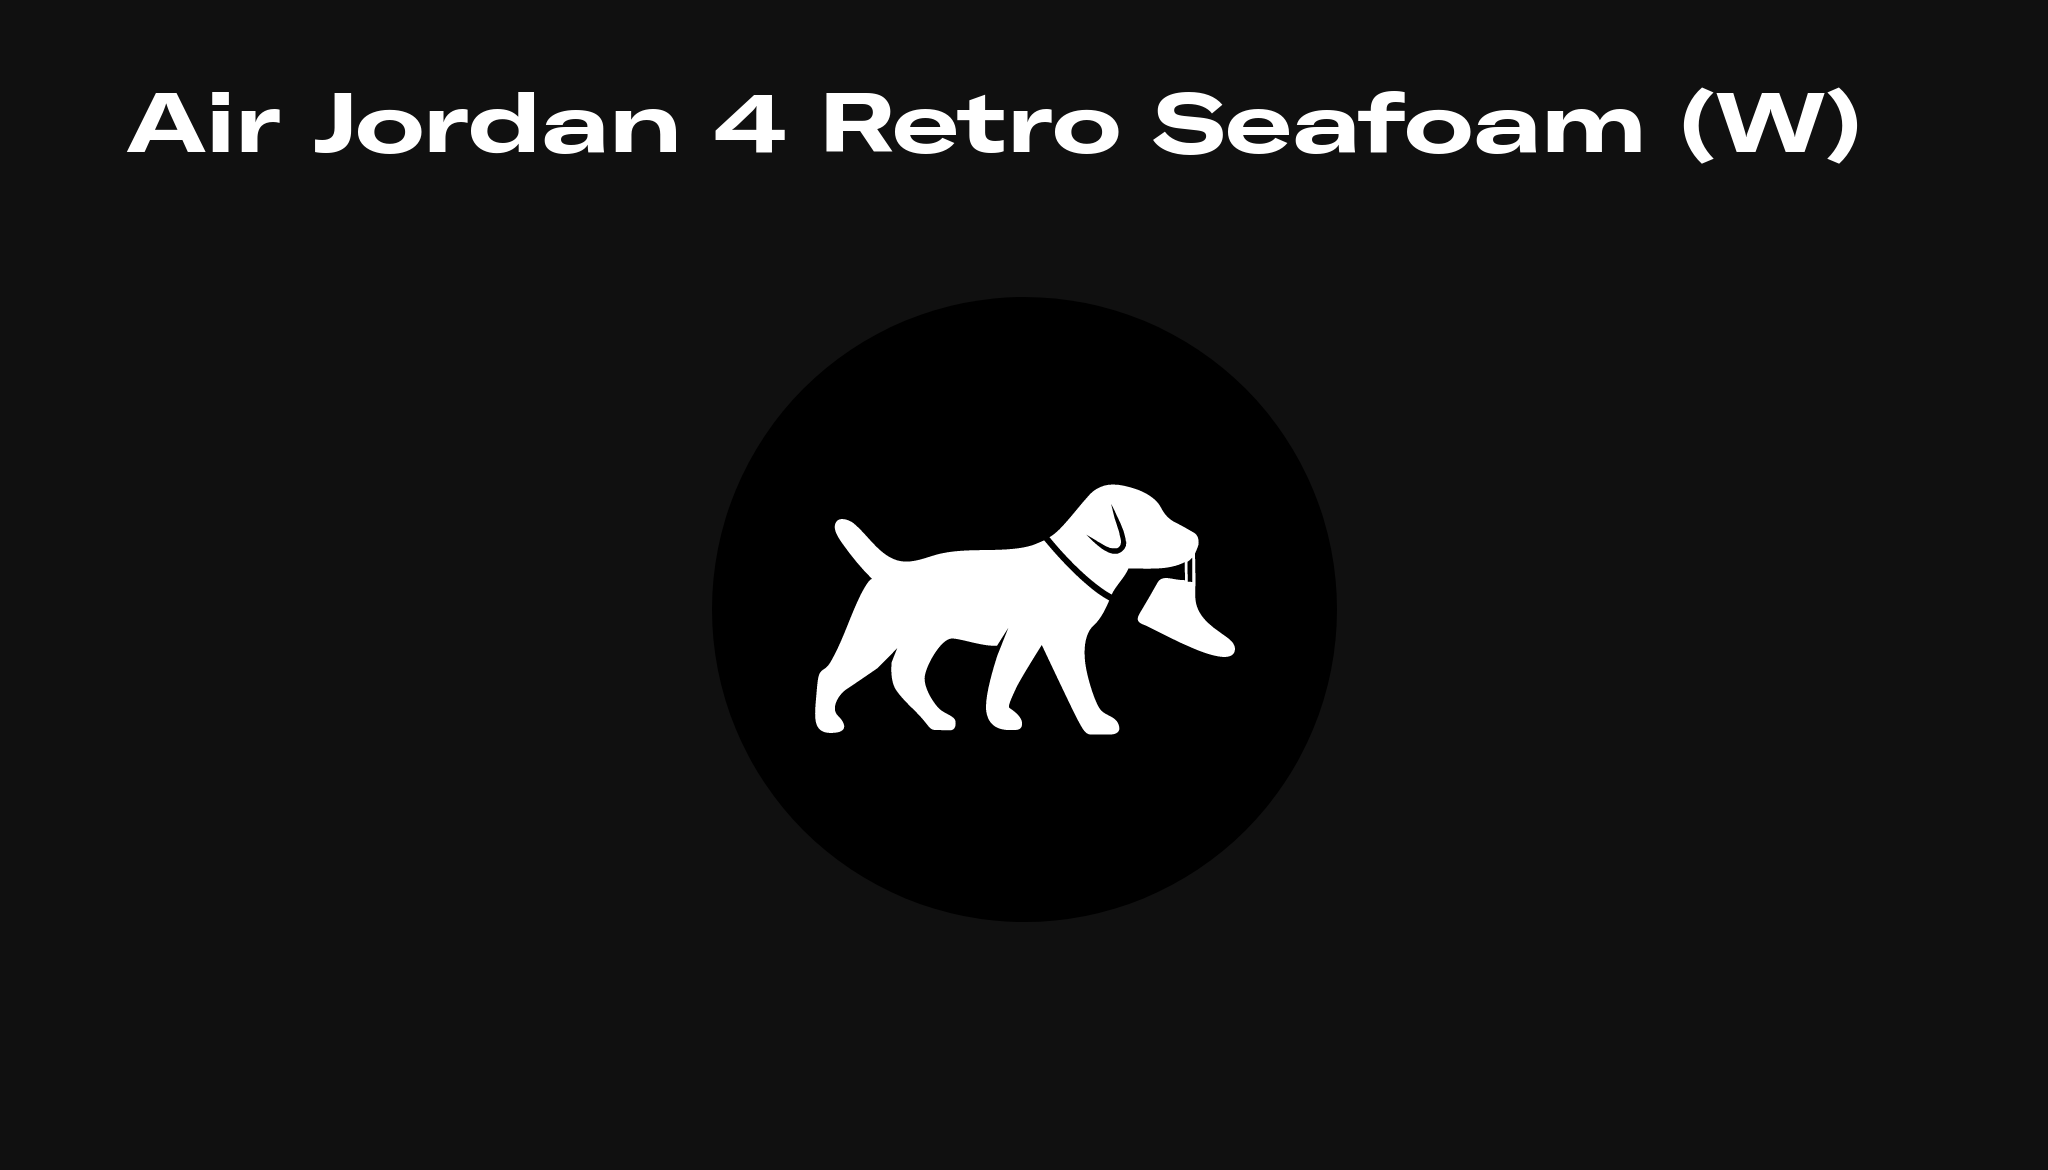 Air Jordan 4 Retro Seafoam (W), Raffles 